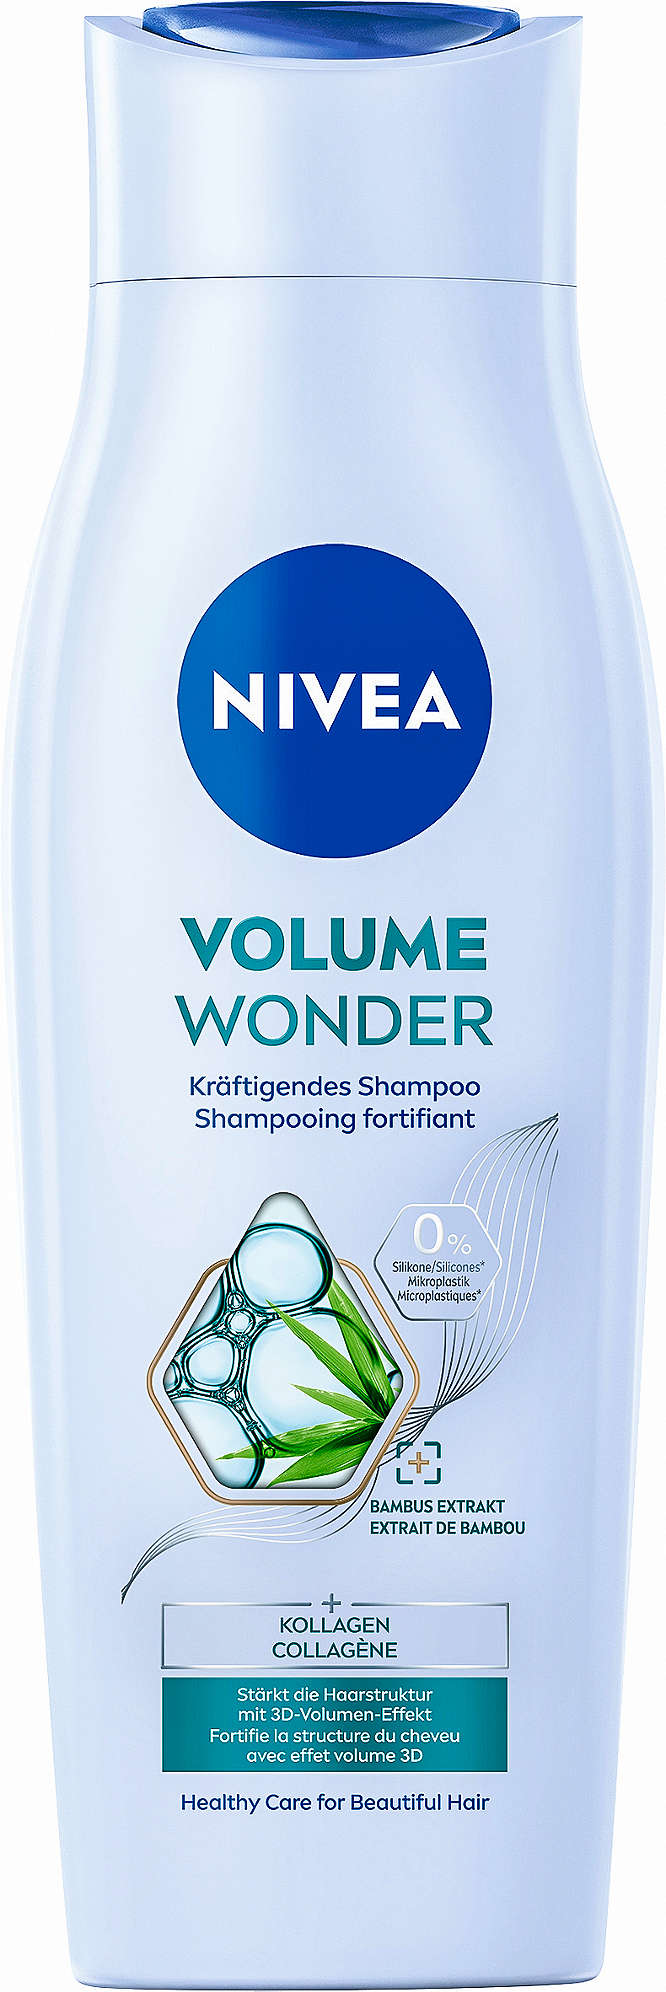 Abbildung des Angebots NIVEA Shampoo oder Spülung 